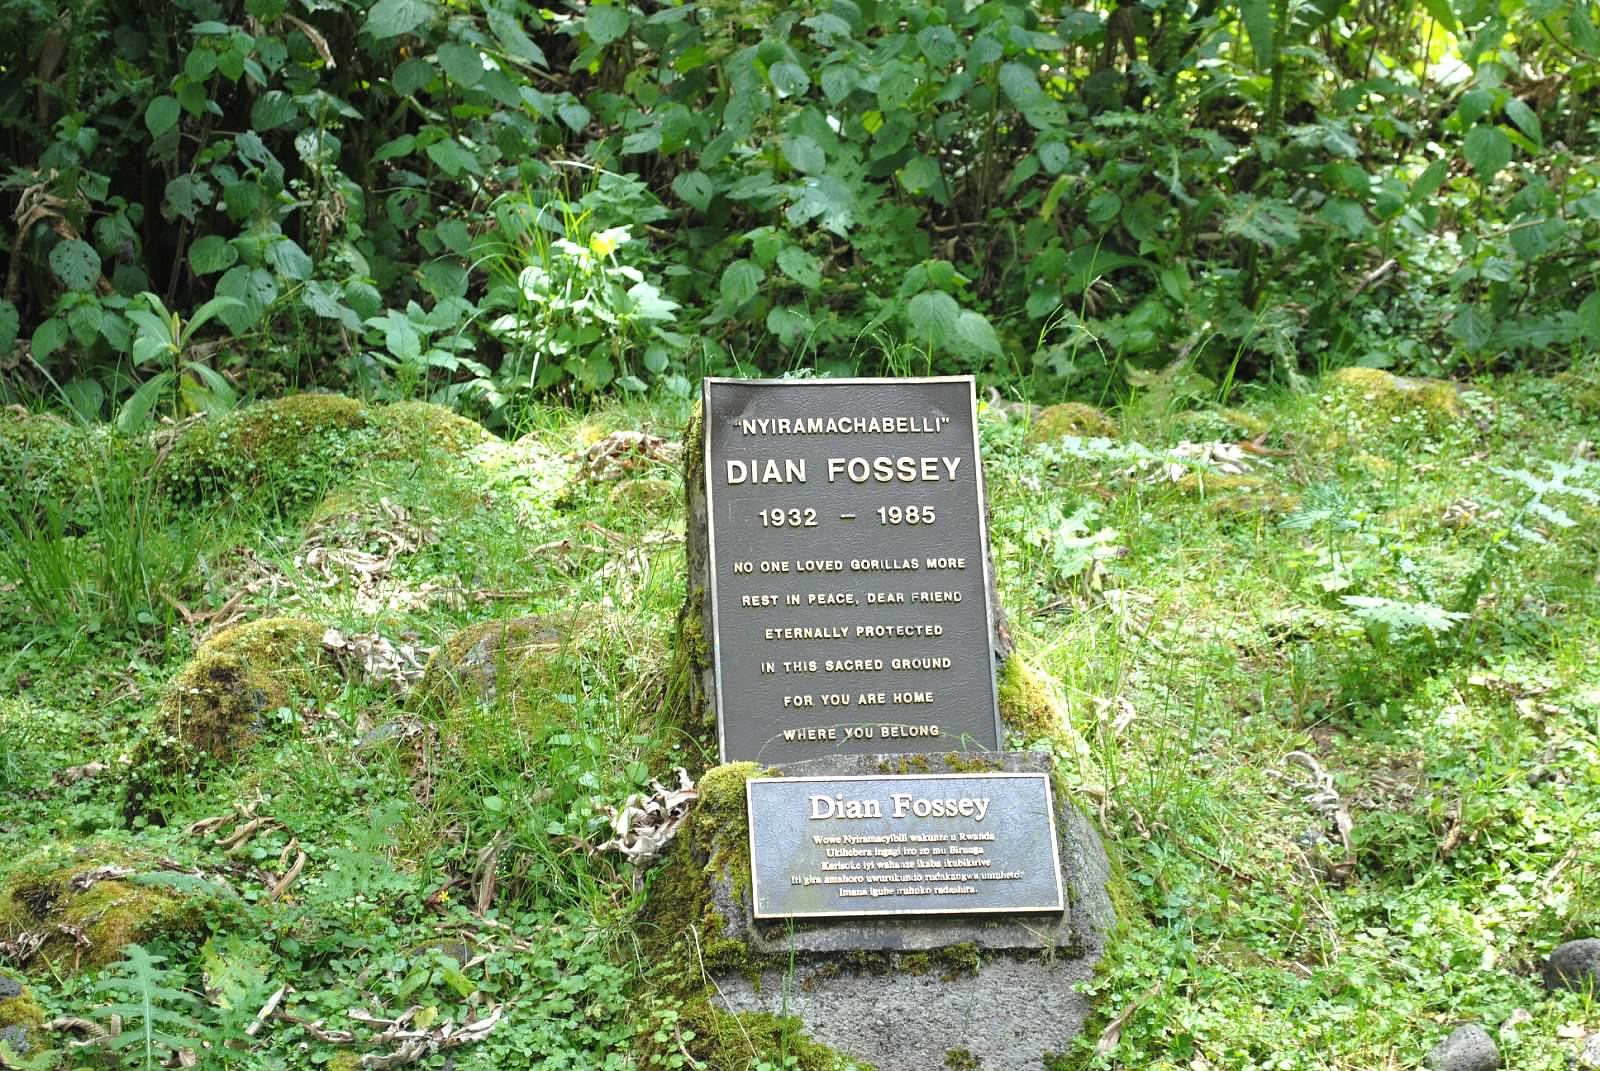 Das Grab von Dian Fossey ist bis heute eine Gedenkstätte zahlreicher Forscher